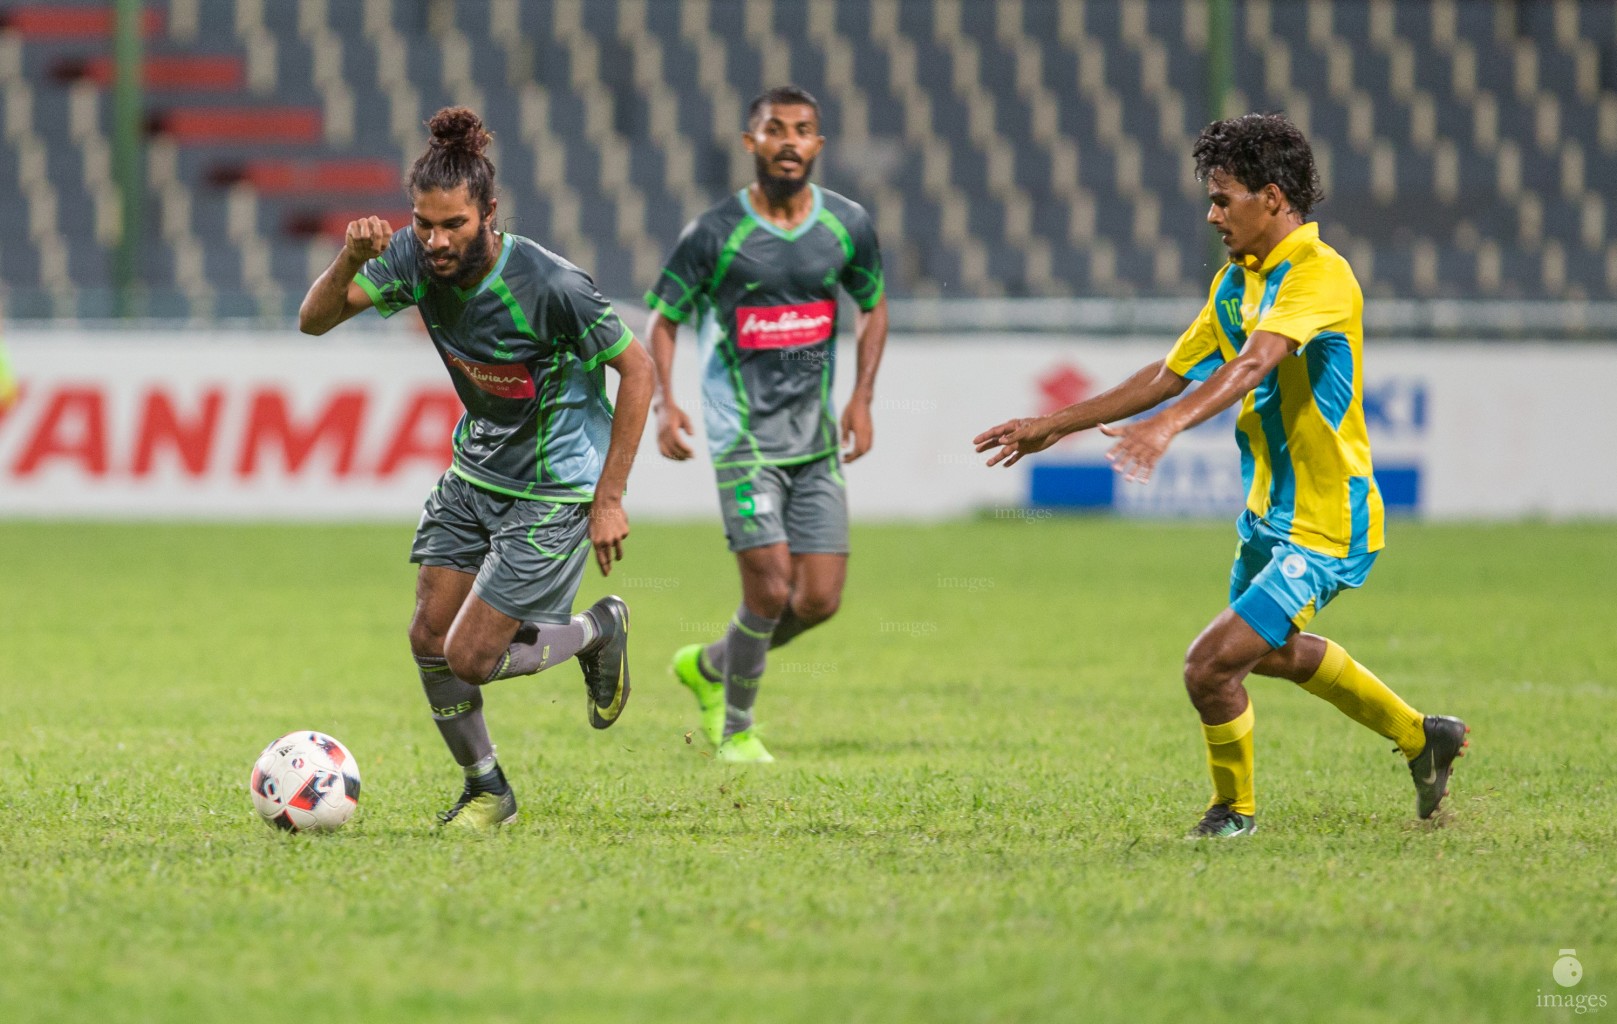 Greenstreet vs Club Valencia in the second round of STO Male League. Male', Maldives. Saturday 24 June 2017. (Images.mv Photo/ Abdulla Abeedh).